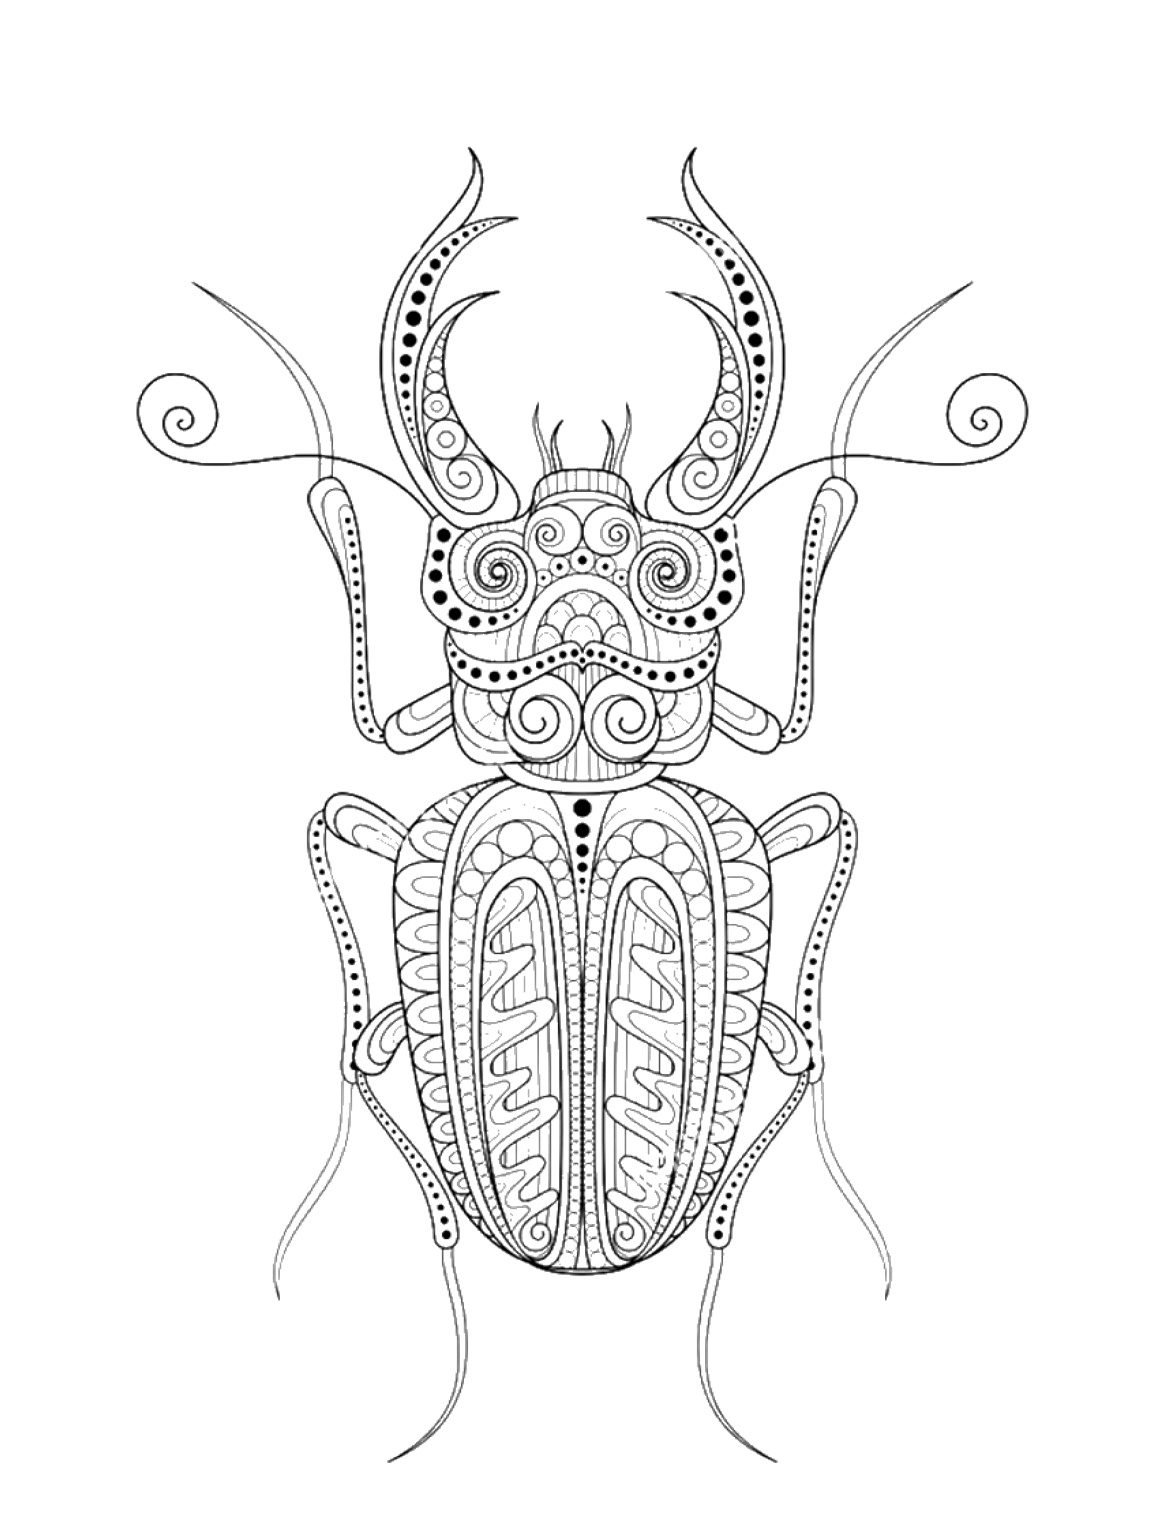 Coloriage Scarabée Mandala Scarabée style Zentangle Gratuit, tatouage insecte, dessin anti-stress à imprimer sur iColorify.com